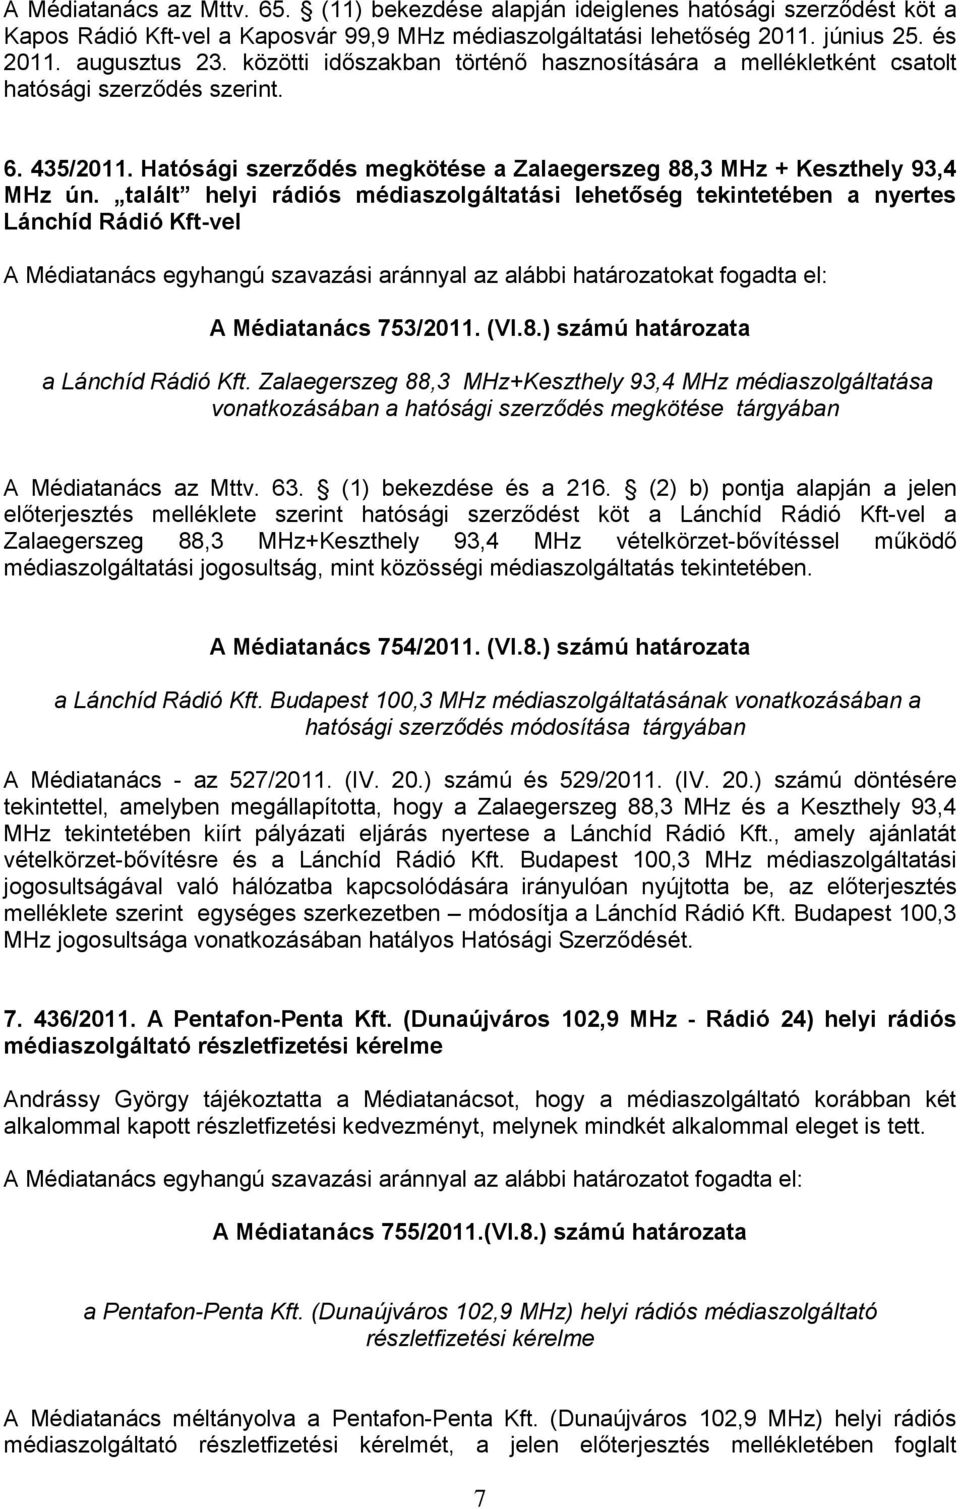 talált helyi rádiós médiaszolgáltatási lehetőség tekintetében a nyertes Lánchíd Rádió Kft-vel A Médiatanács egyhangú szavazási aránnyal az alábbi határozatokat fogadta el: A Médiatanács 753/2011. (VI.